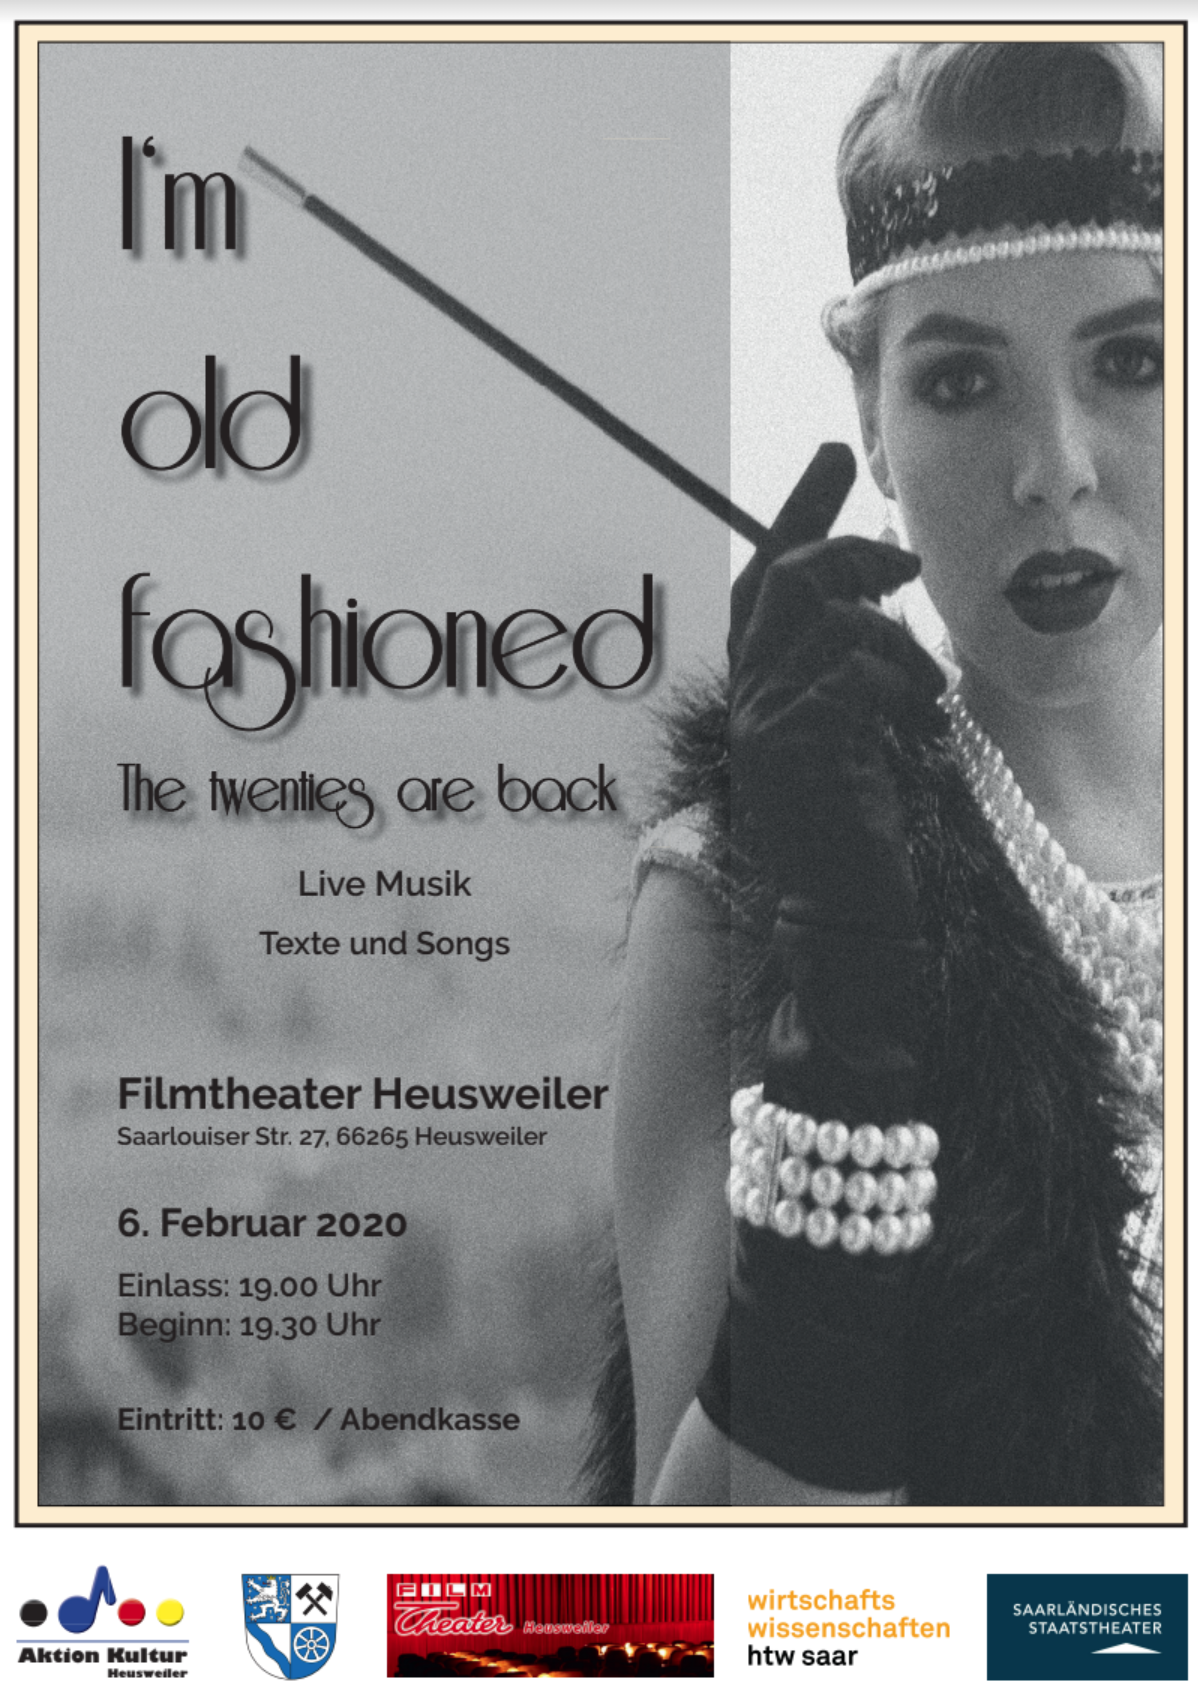 I'm old fashioned - The twenties are back -  Musikalisch literarischer Abend in Kino Heusweiler